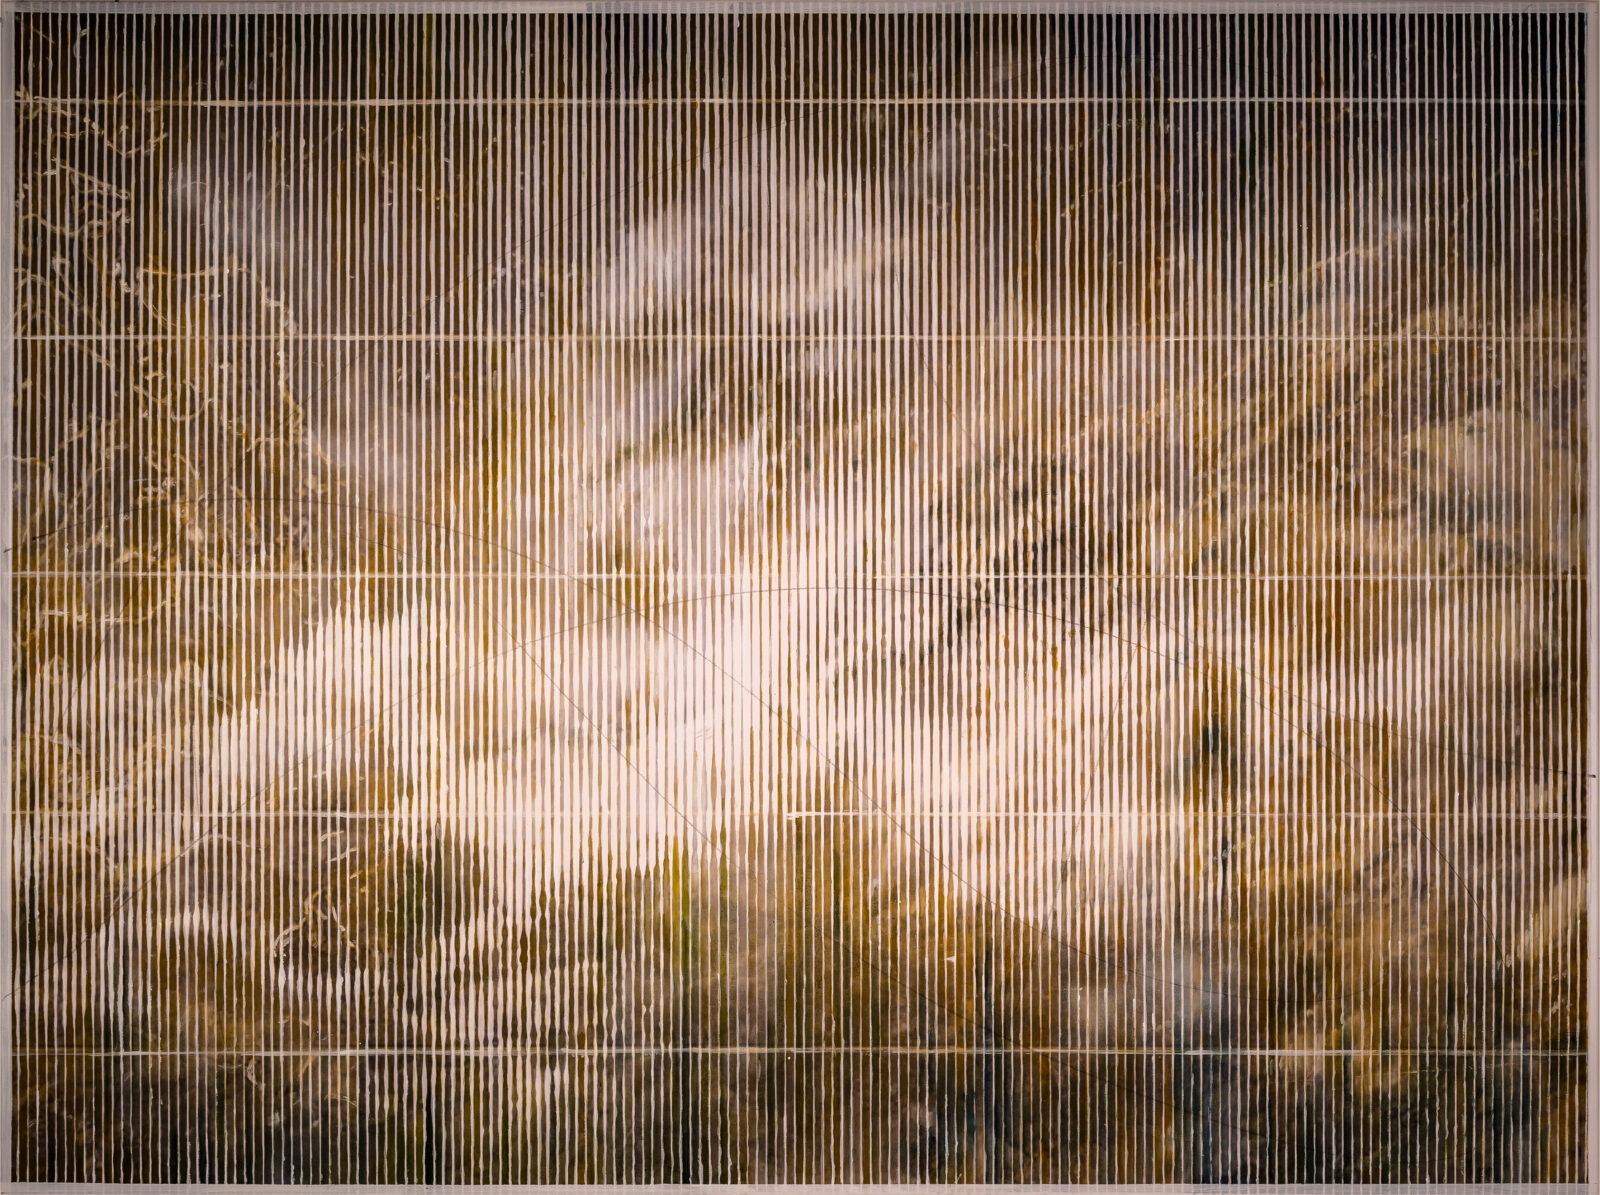 Patrick Ceyssens, That's just a part of it #1, oil, spraypaint, canvas, 200 x 150 cm